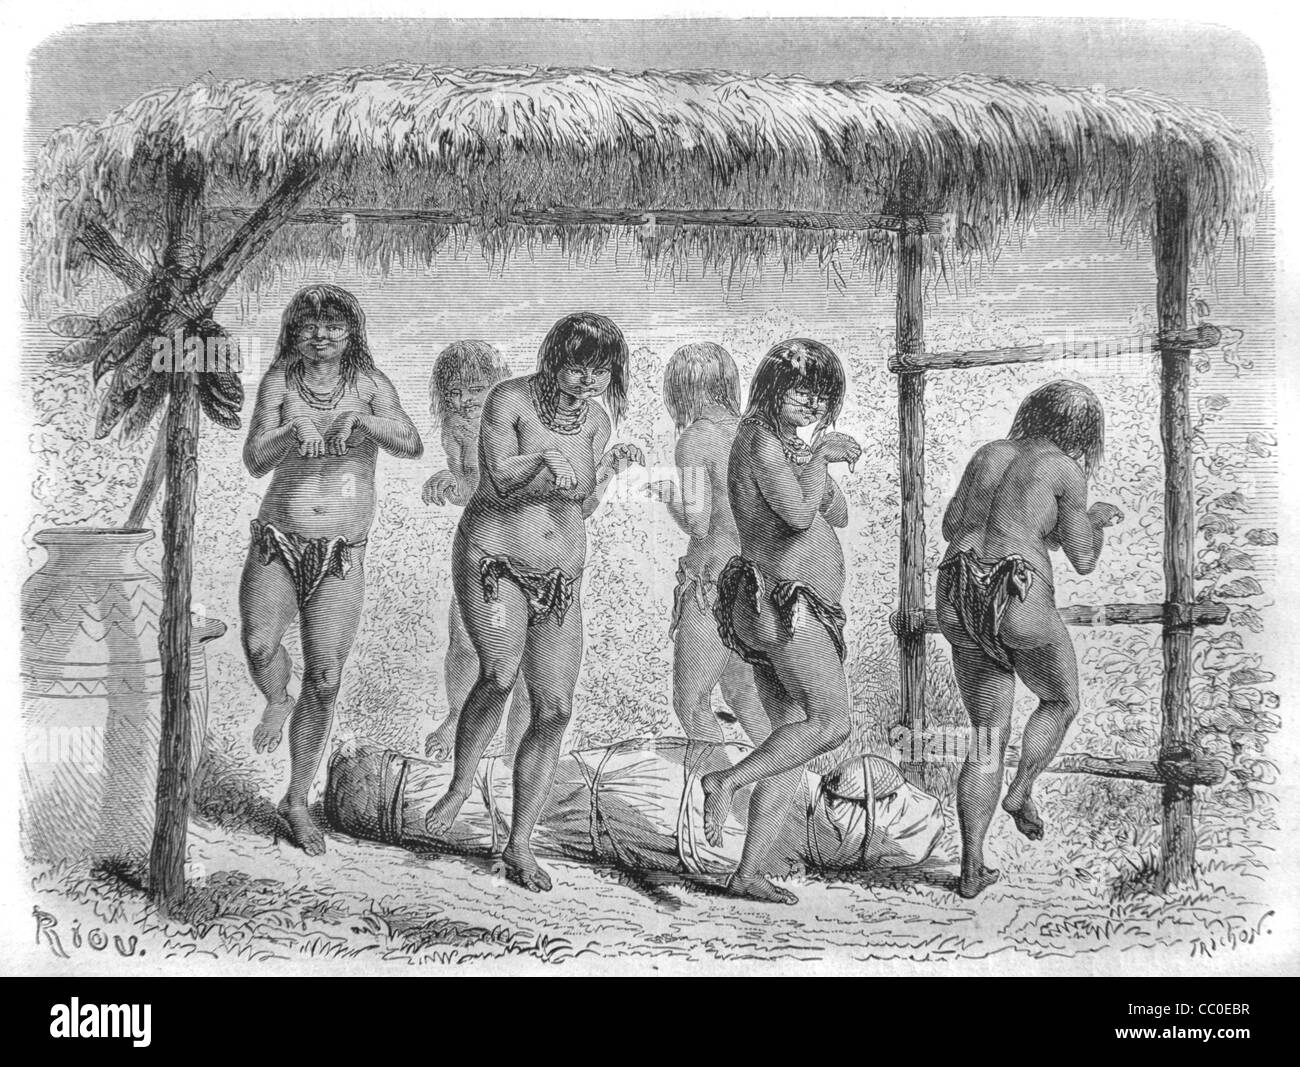 Beerdigung, Beerdigung oder Beerdigung Tanz der Indianer oder Ureinwohner, Costa Rica, Mittelamerika, 1864 Gravieren Stockfoto